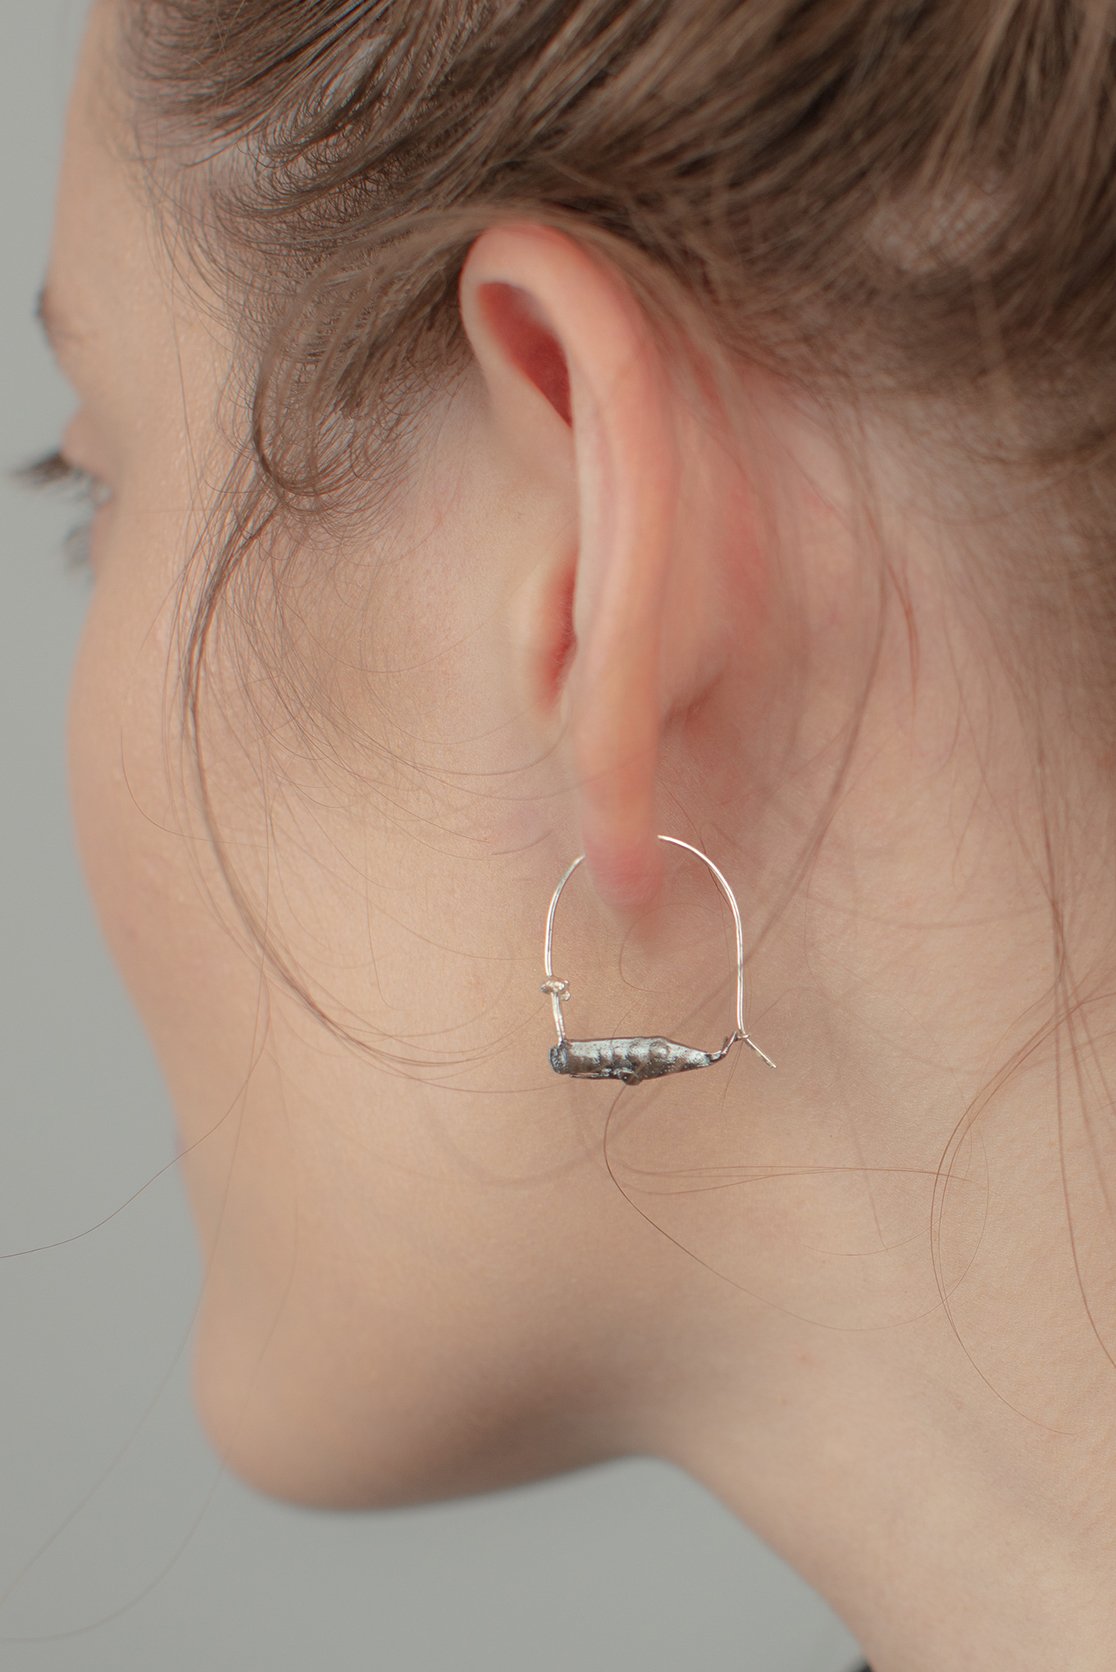 sperm whale earrings